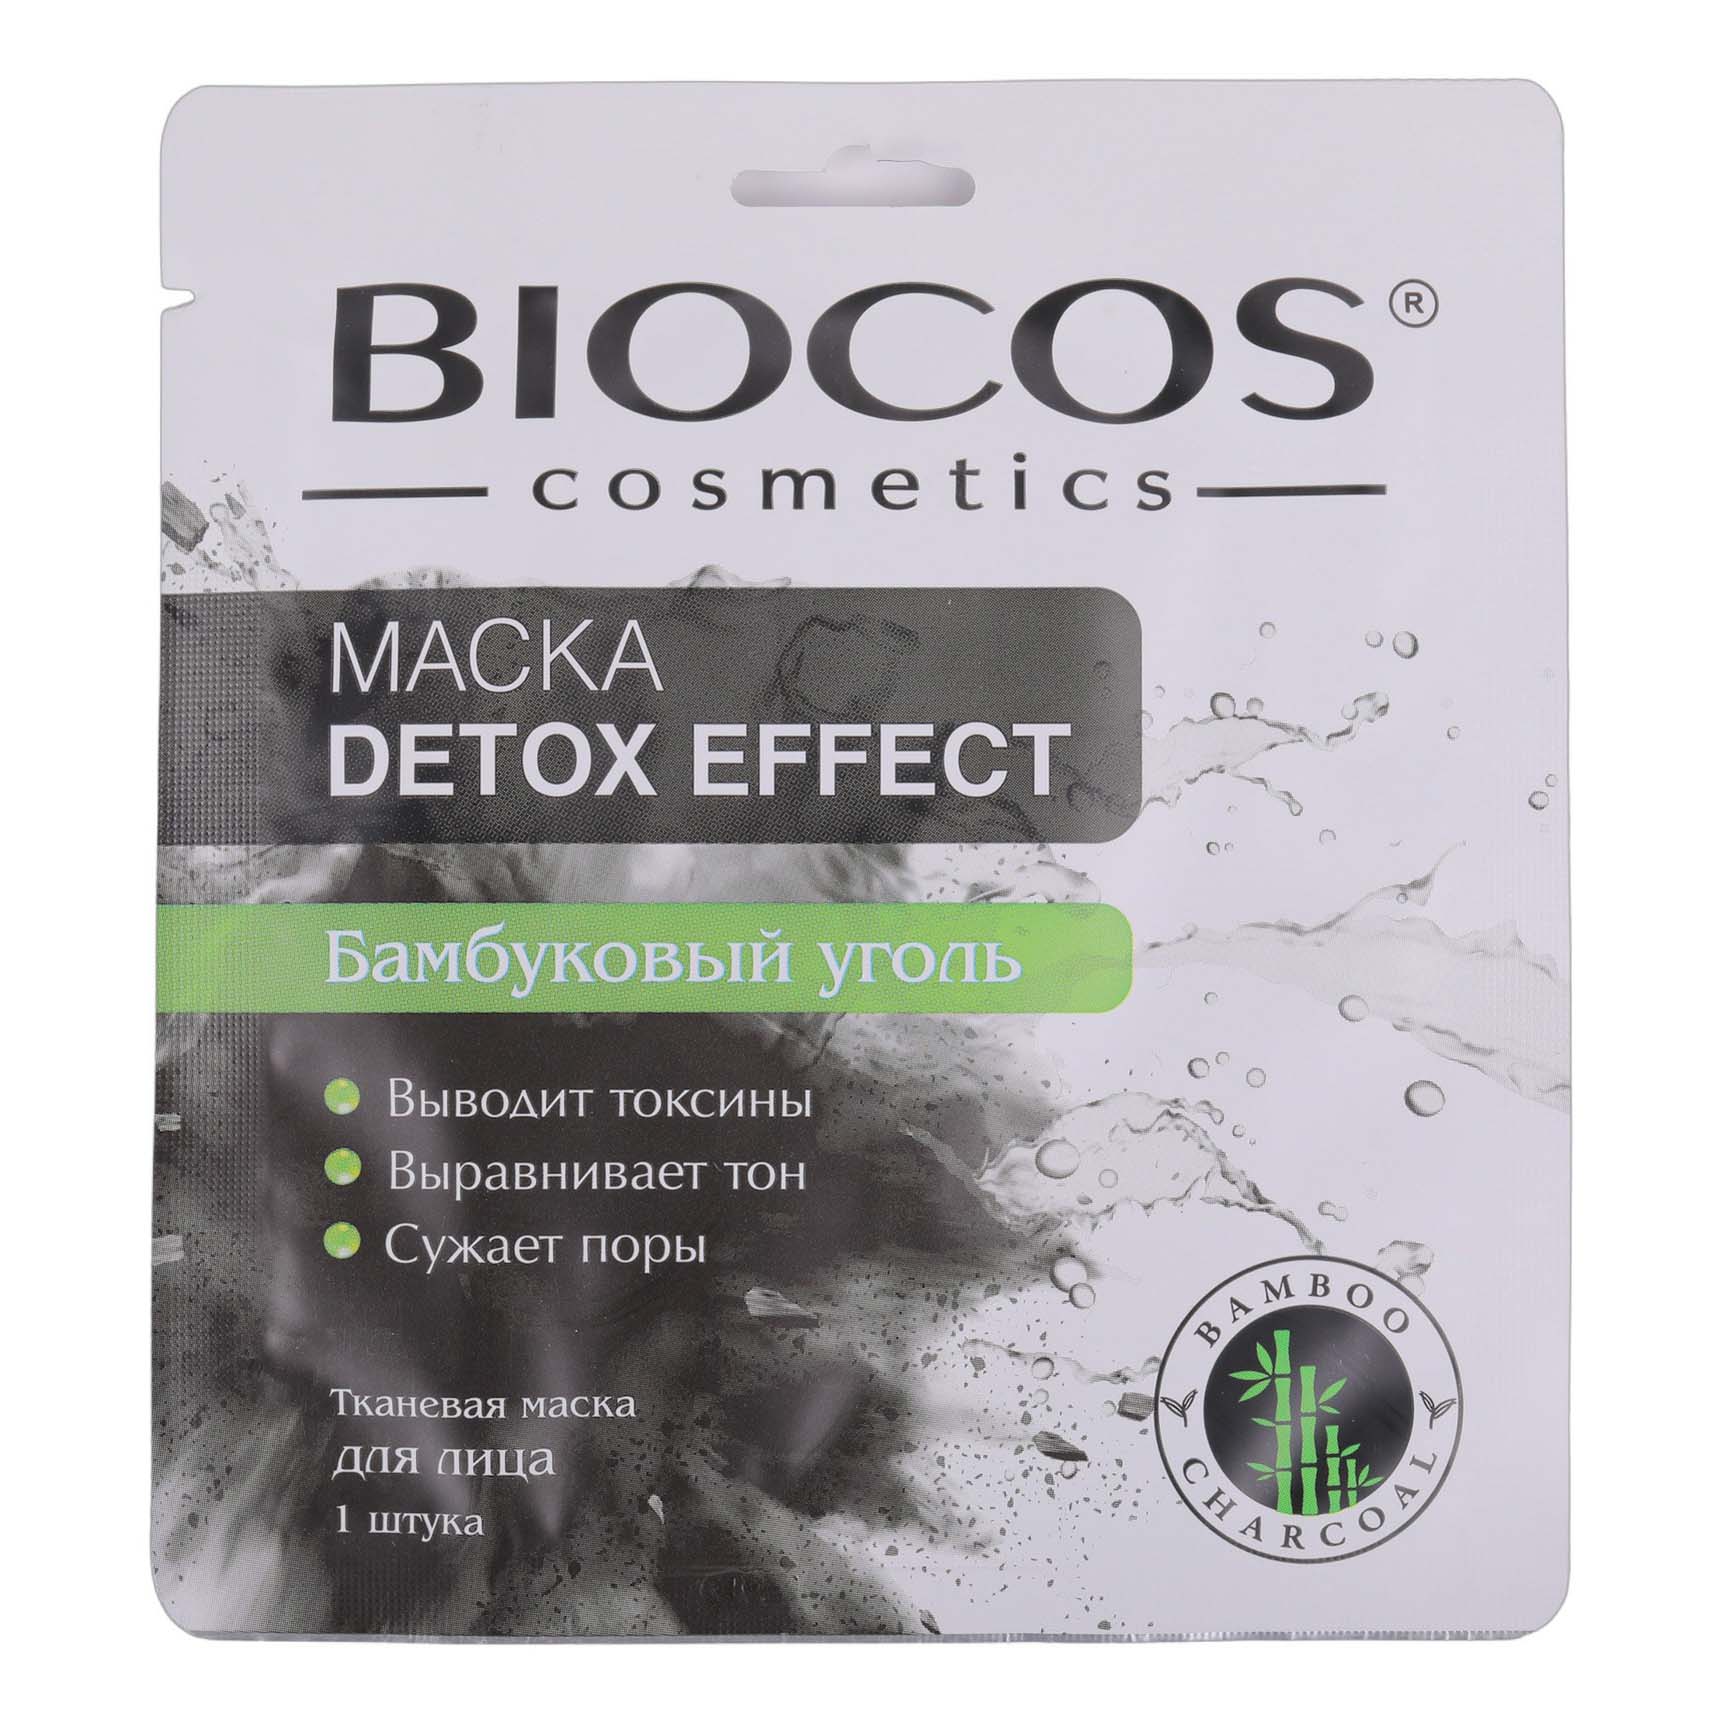 Маска тканевая для лица Biocos Detox Effect с бамбуковым углем 1 шт набор sadoer тканевая маска для лица выравнивающая с экстрактом винограда 25 г х 5 шт